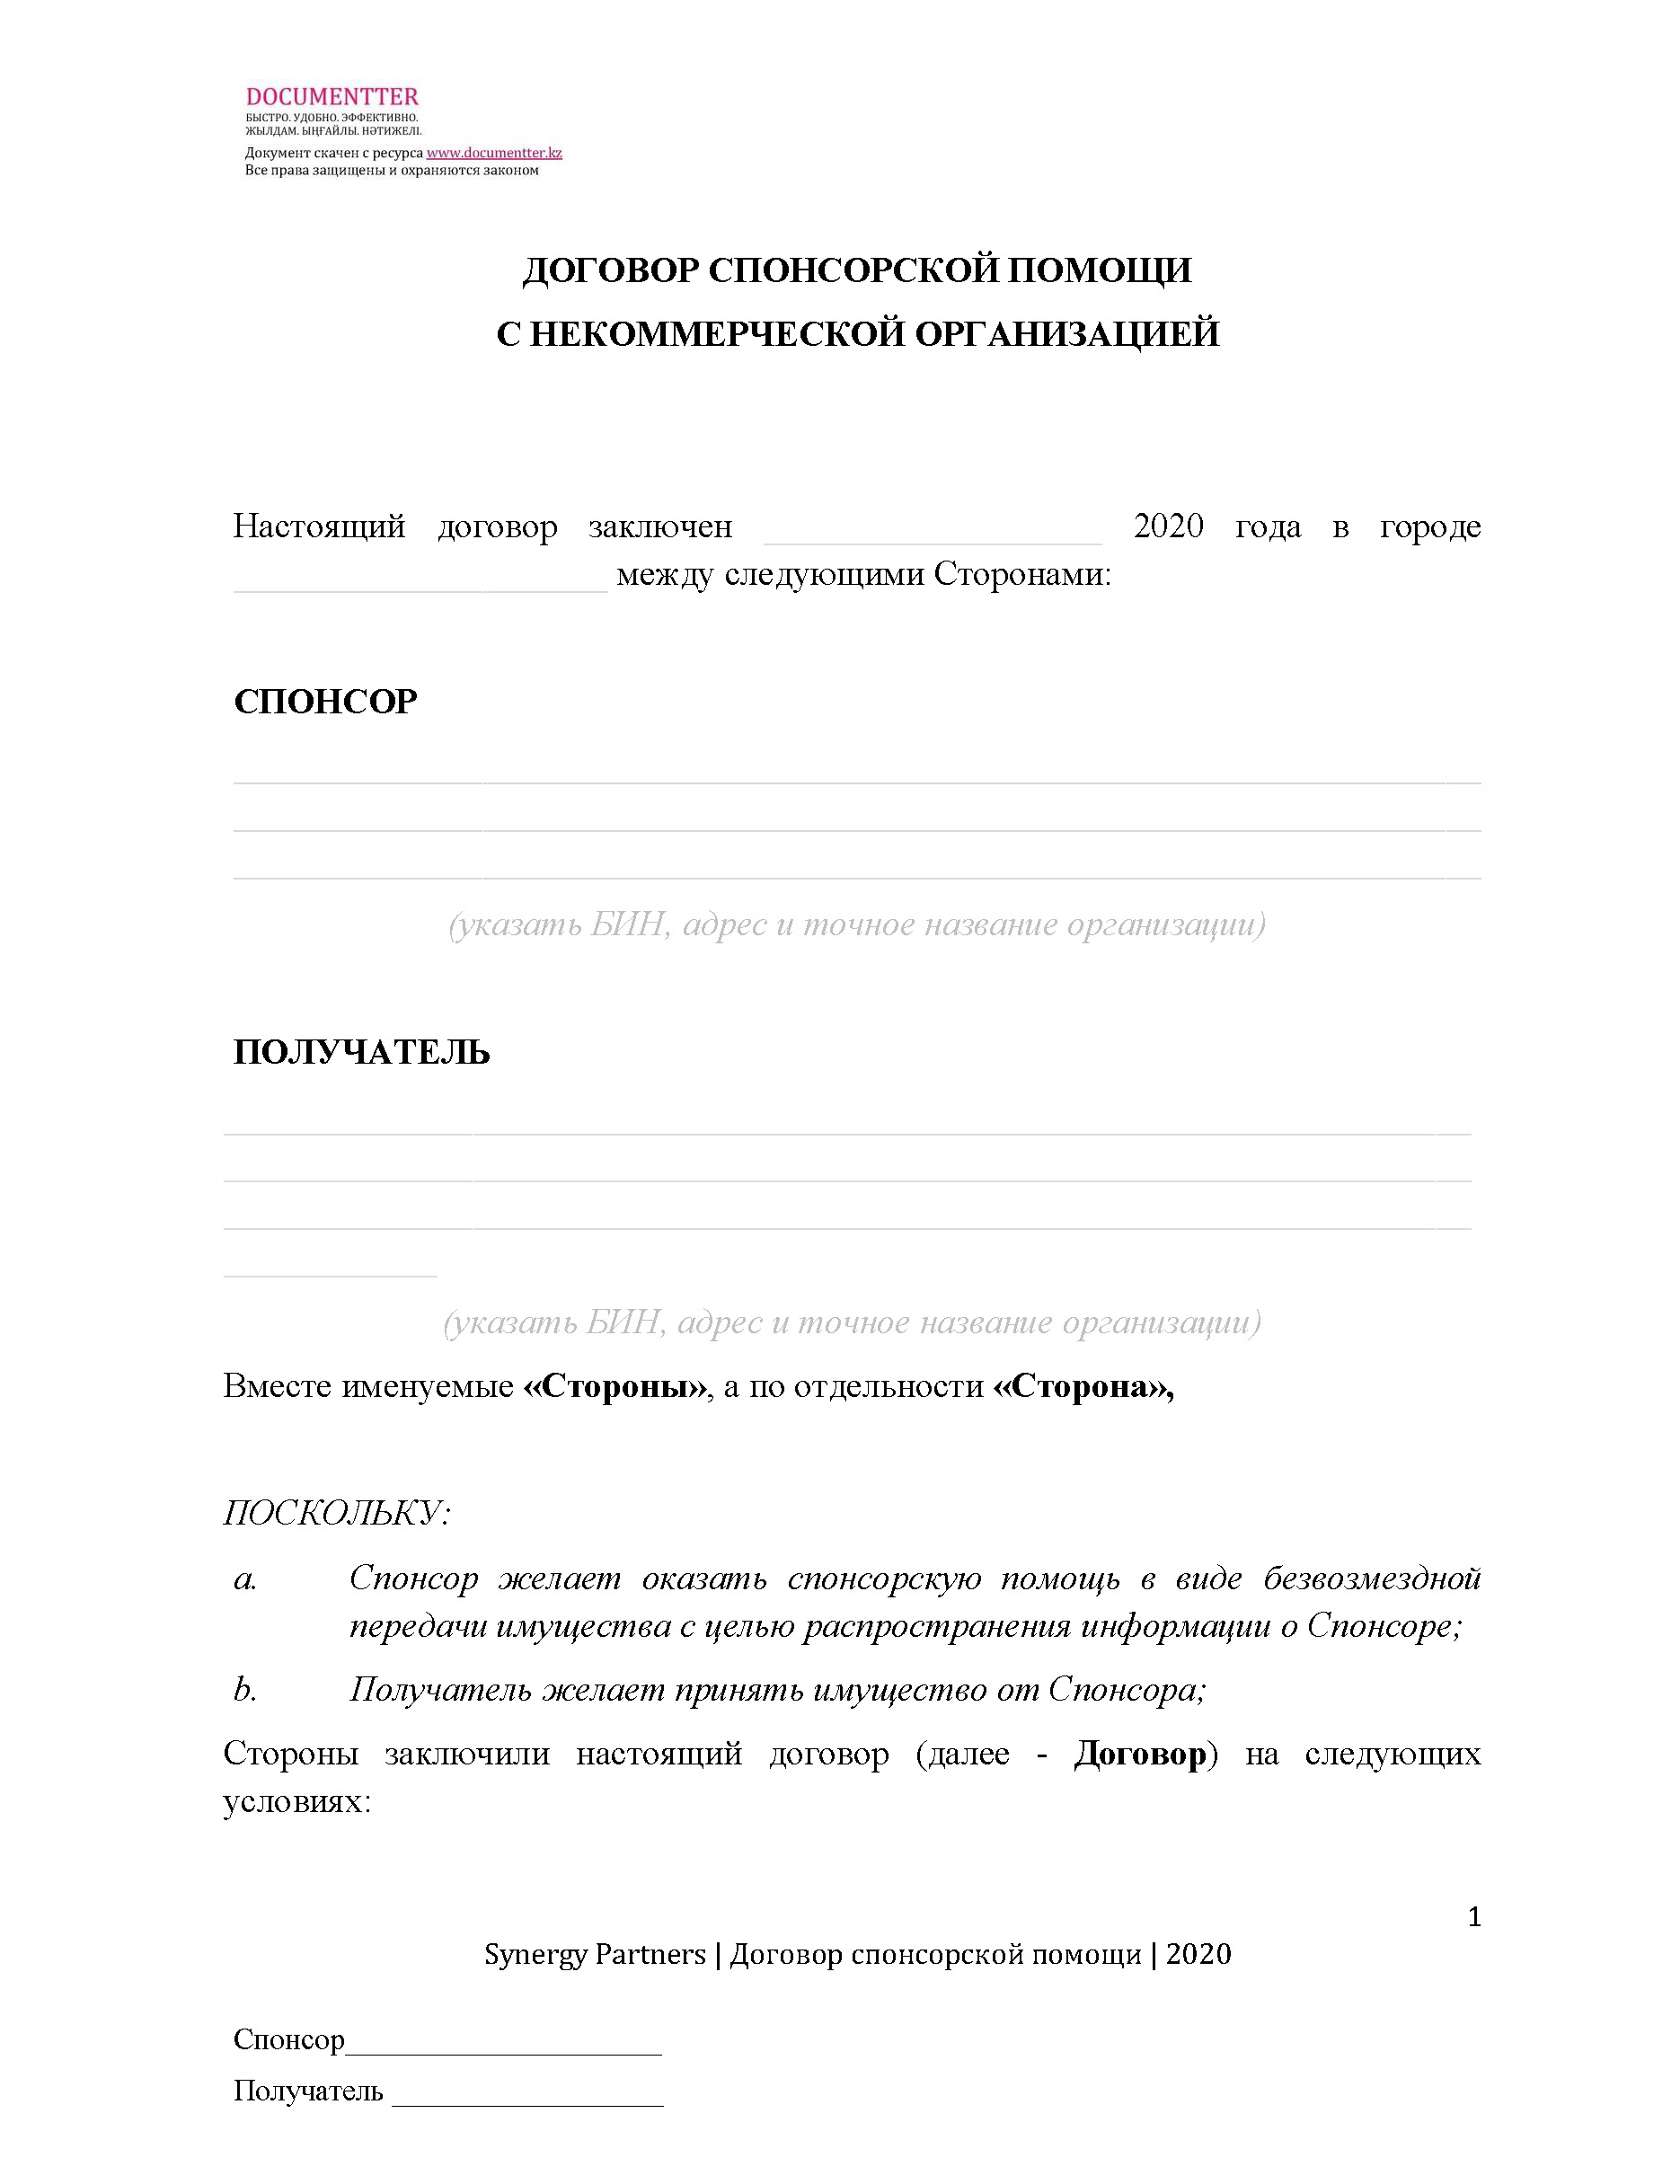 Договор спонсорской помощи, когда ТОО дает спонсорскую помощь некоммерческой организации 4 | documentter.kz в Казахстане 